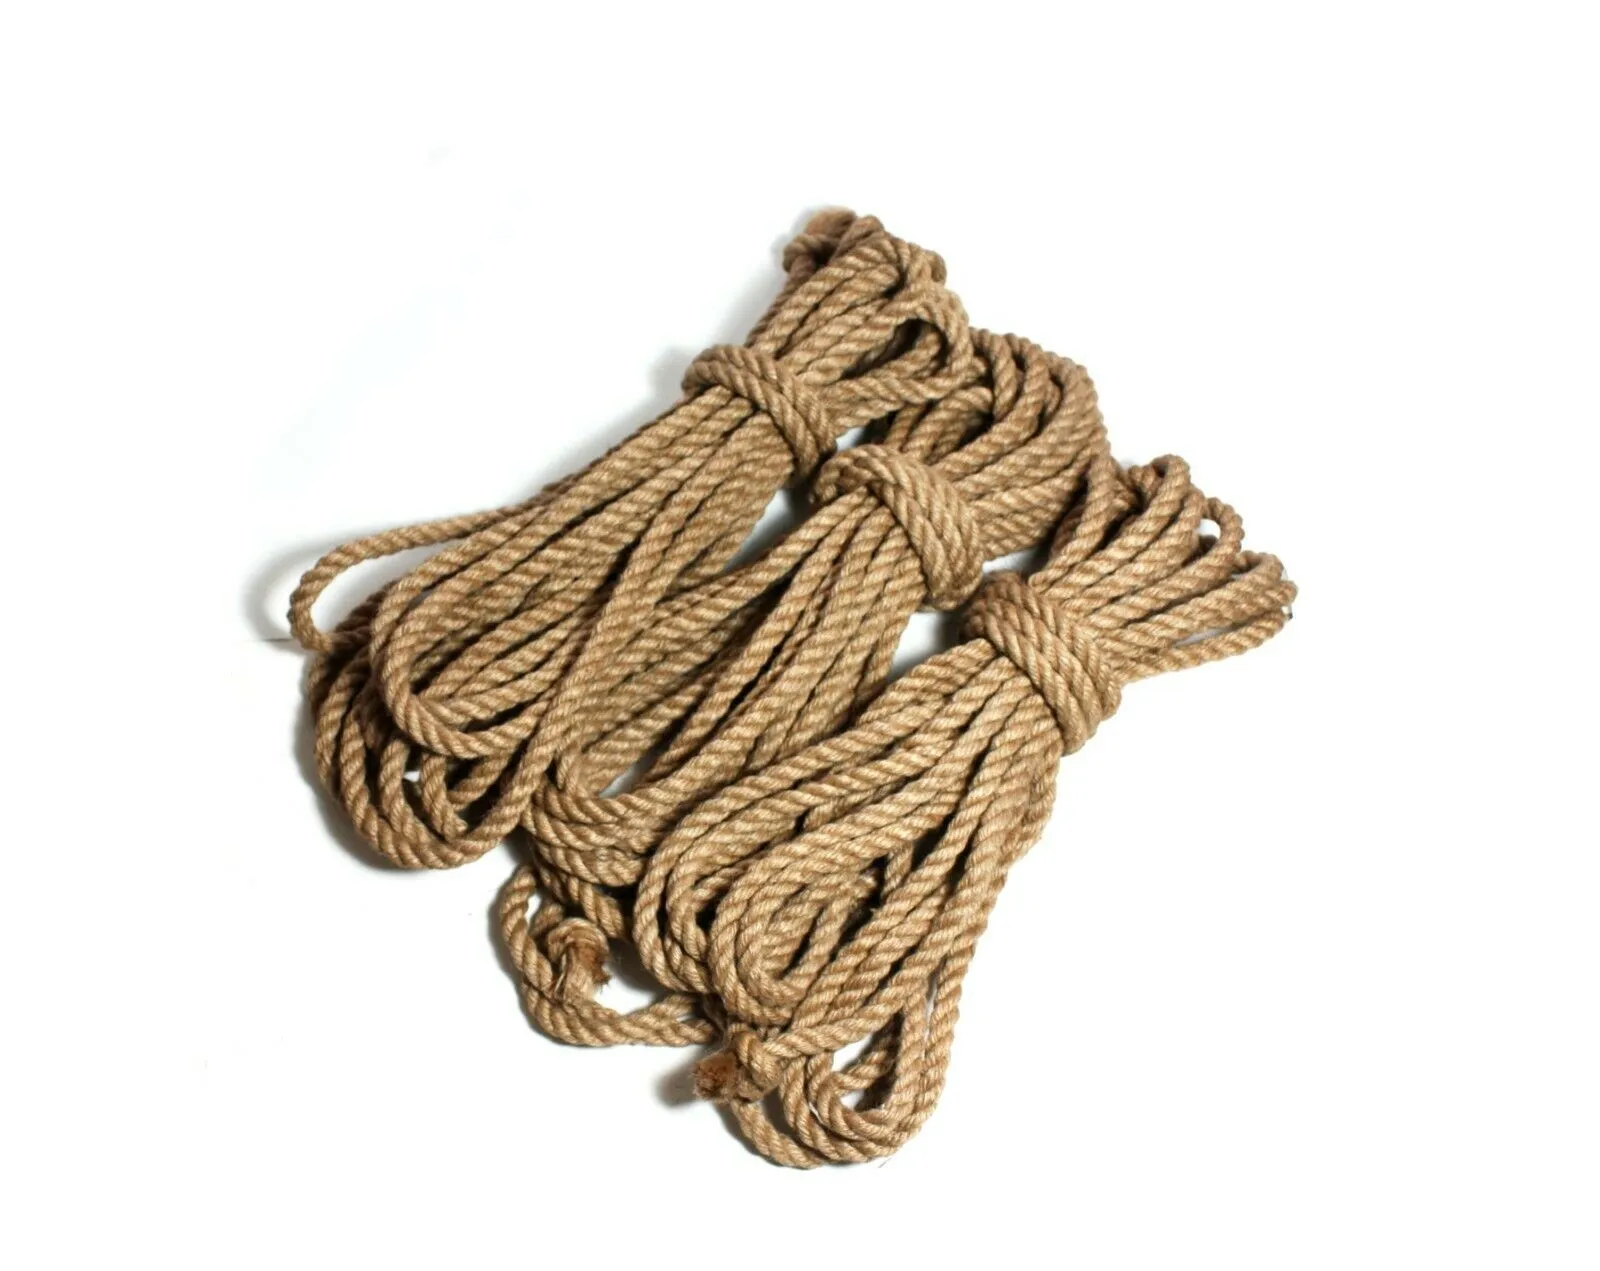 100 Jute ropeBondage Rope BDSM 26ft 8mbondage gear Y20061605944288